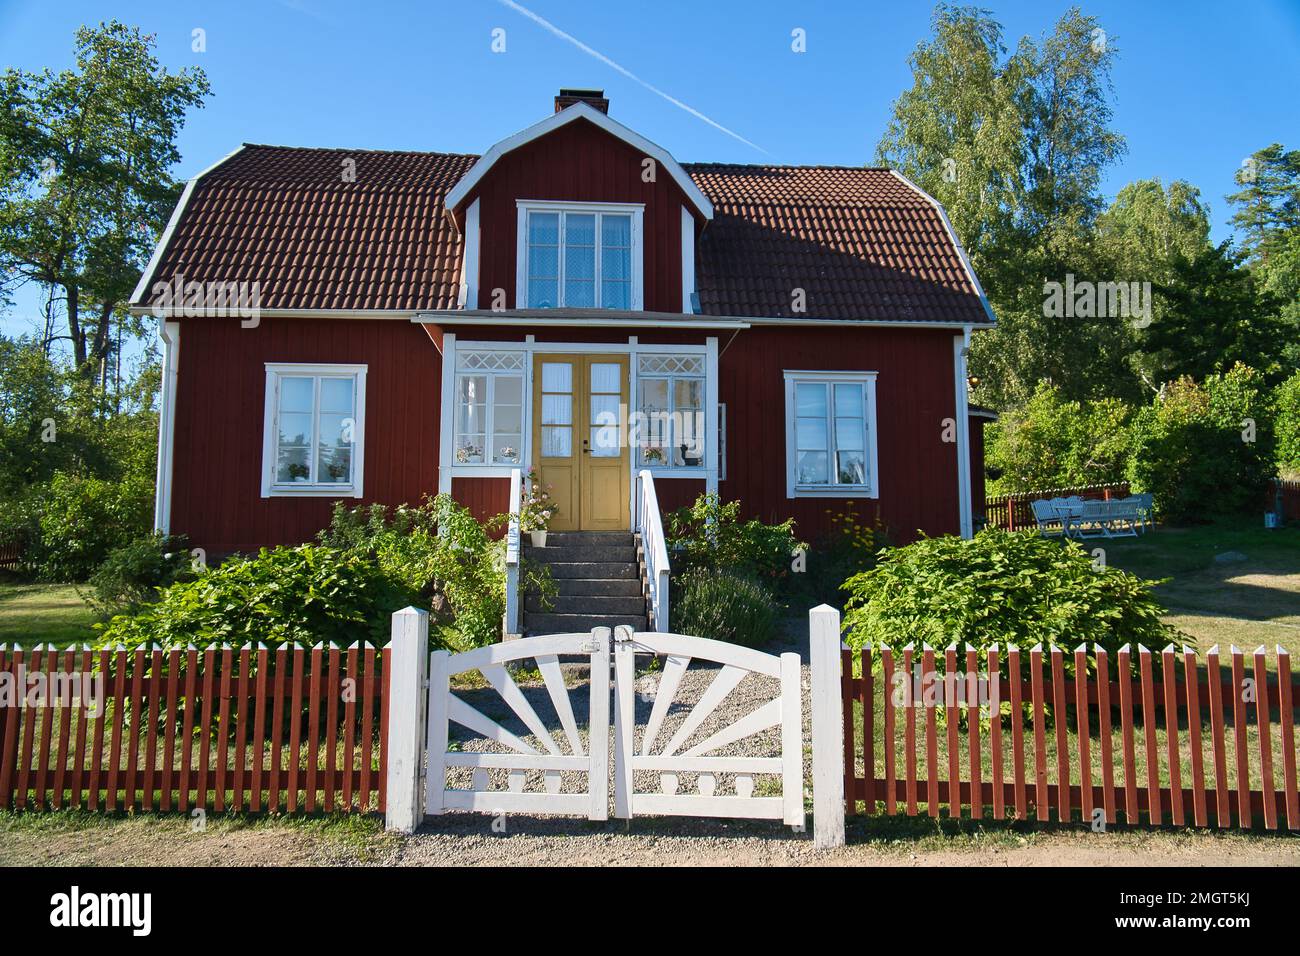 Schwedisches rot-weißes Tratitionhaus in Smalland, Weißer Zaun grüner Garten blauer Himmel. Kindheitserinnerungen aus dem Urlaub in Schweden. Naturfoto Stockfoto